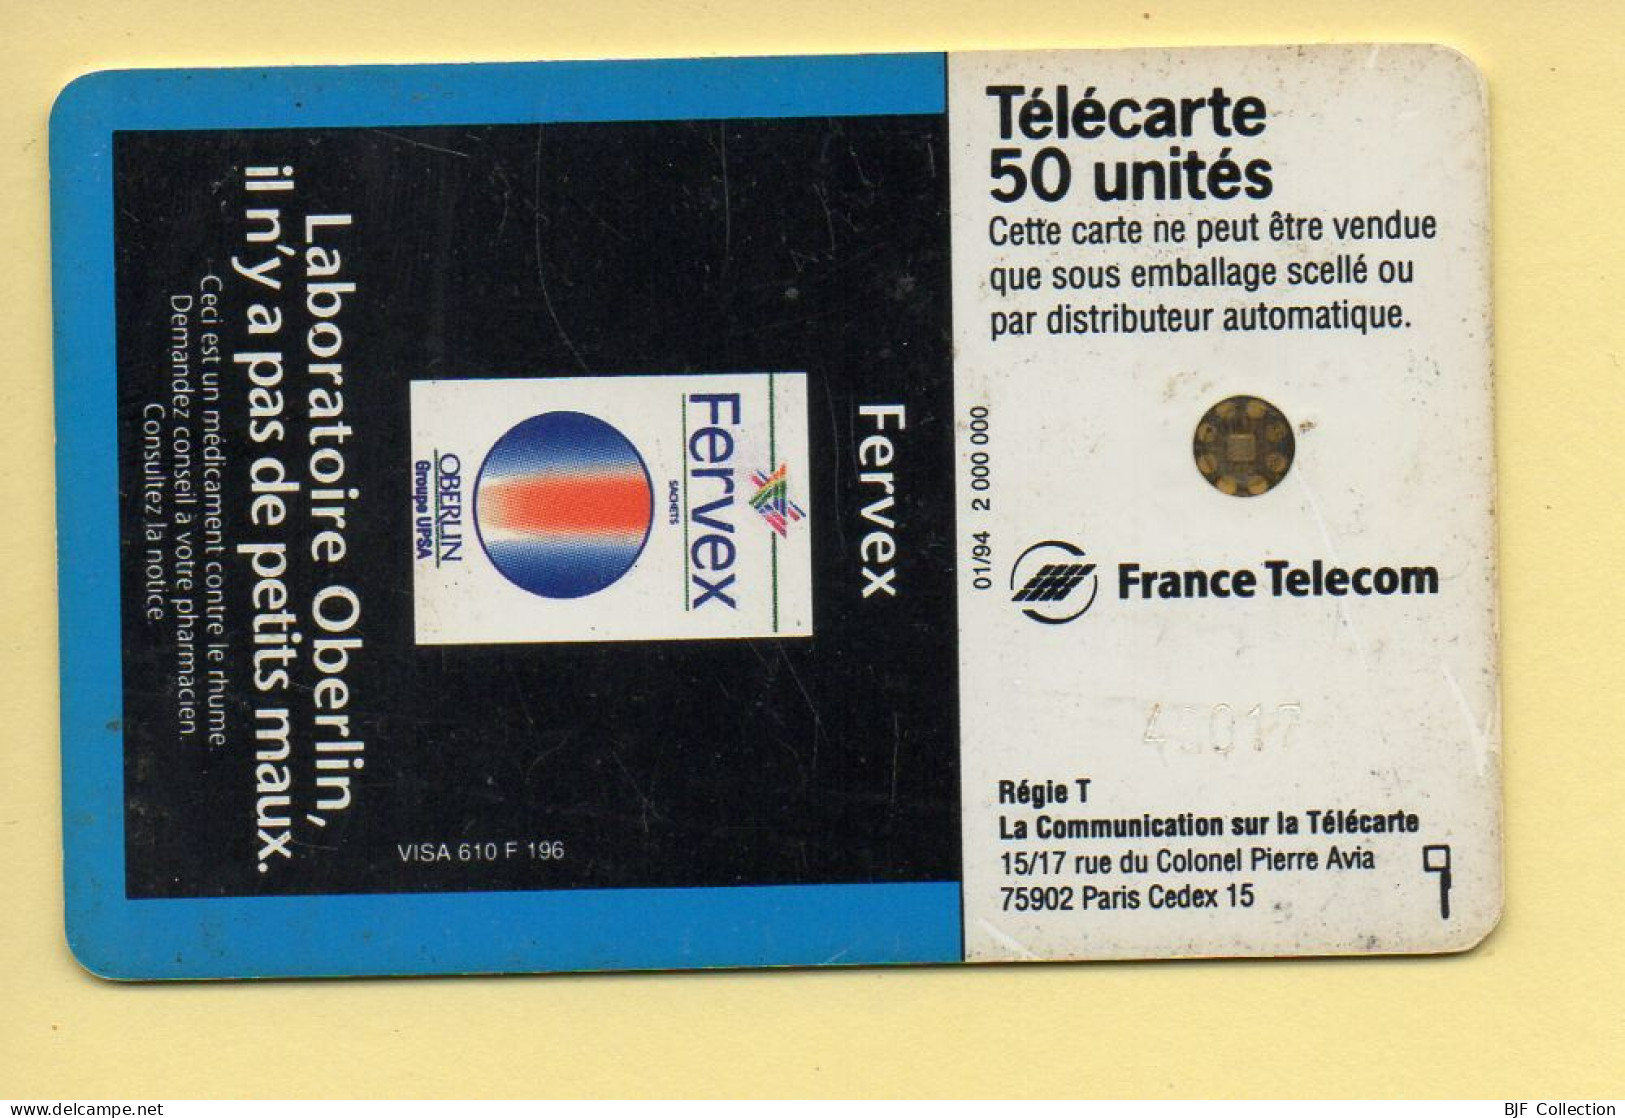 Télécarte 1994 : OBERLIN FERVEX / 50 Unités / Numéro 48017 / 01-94 (voir Puce Et Numéro Au Dos) - 1994